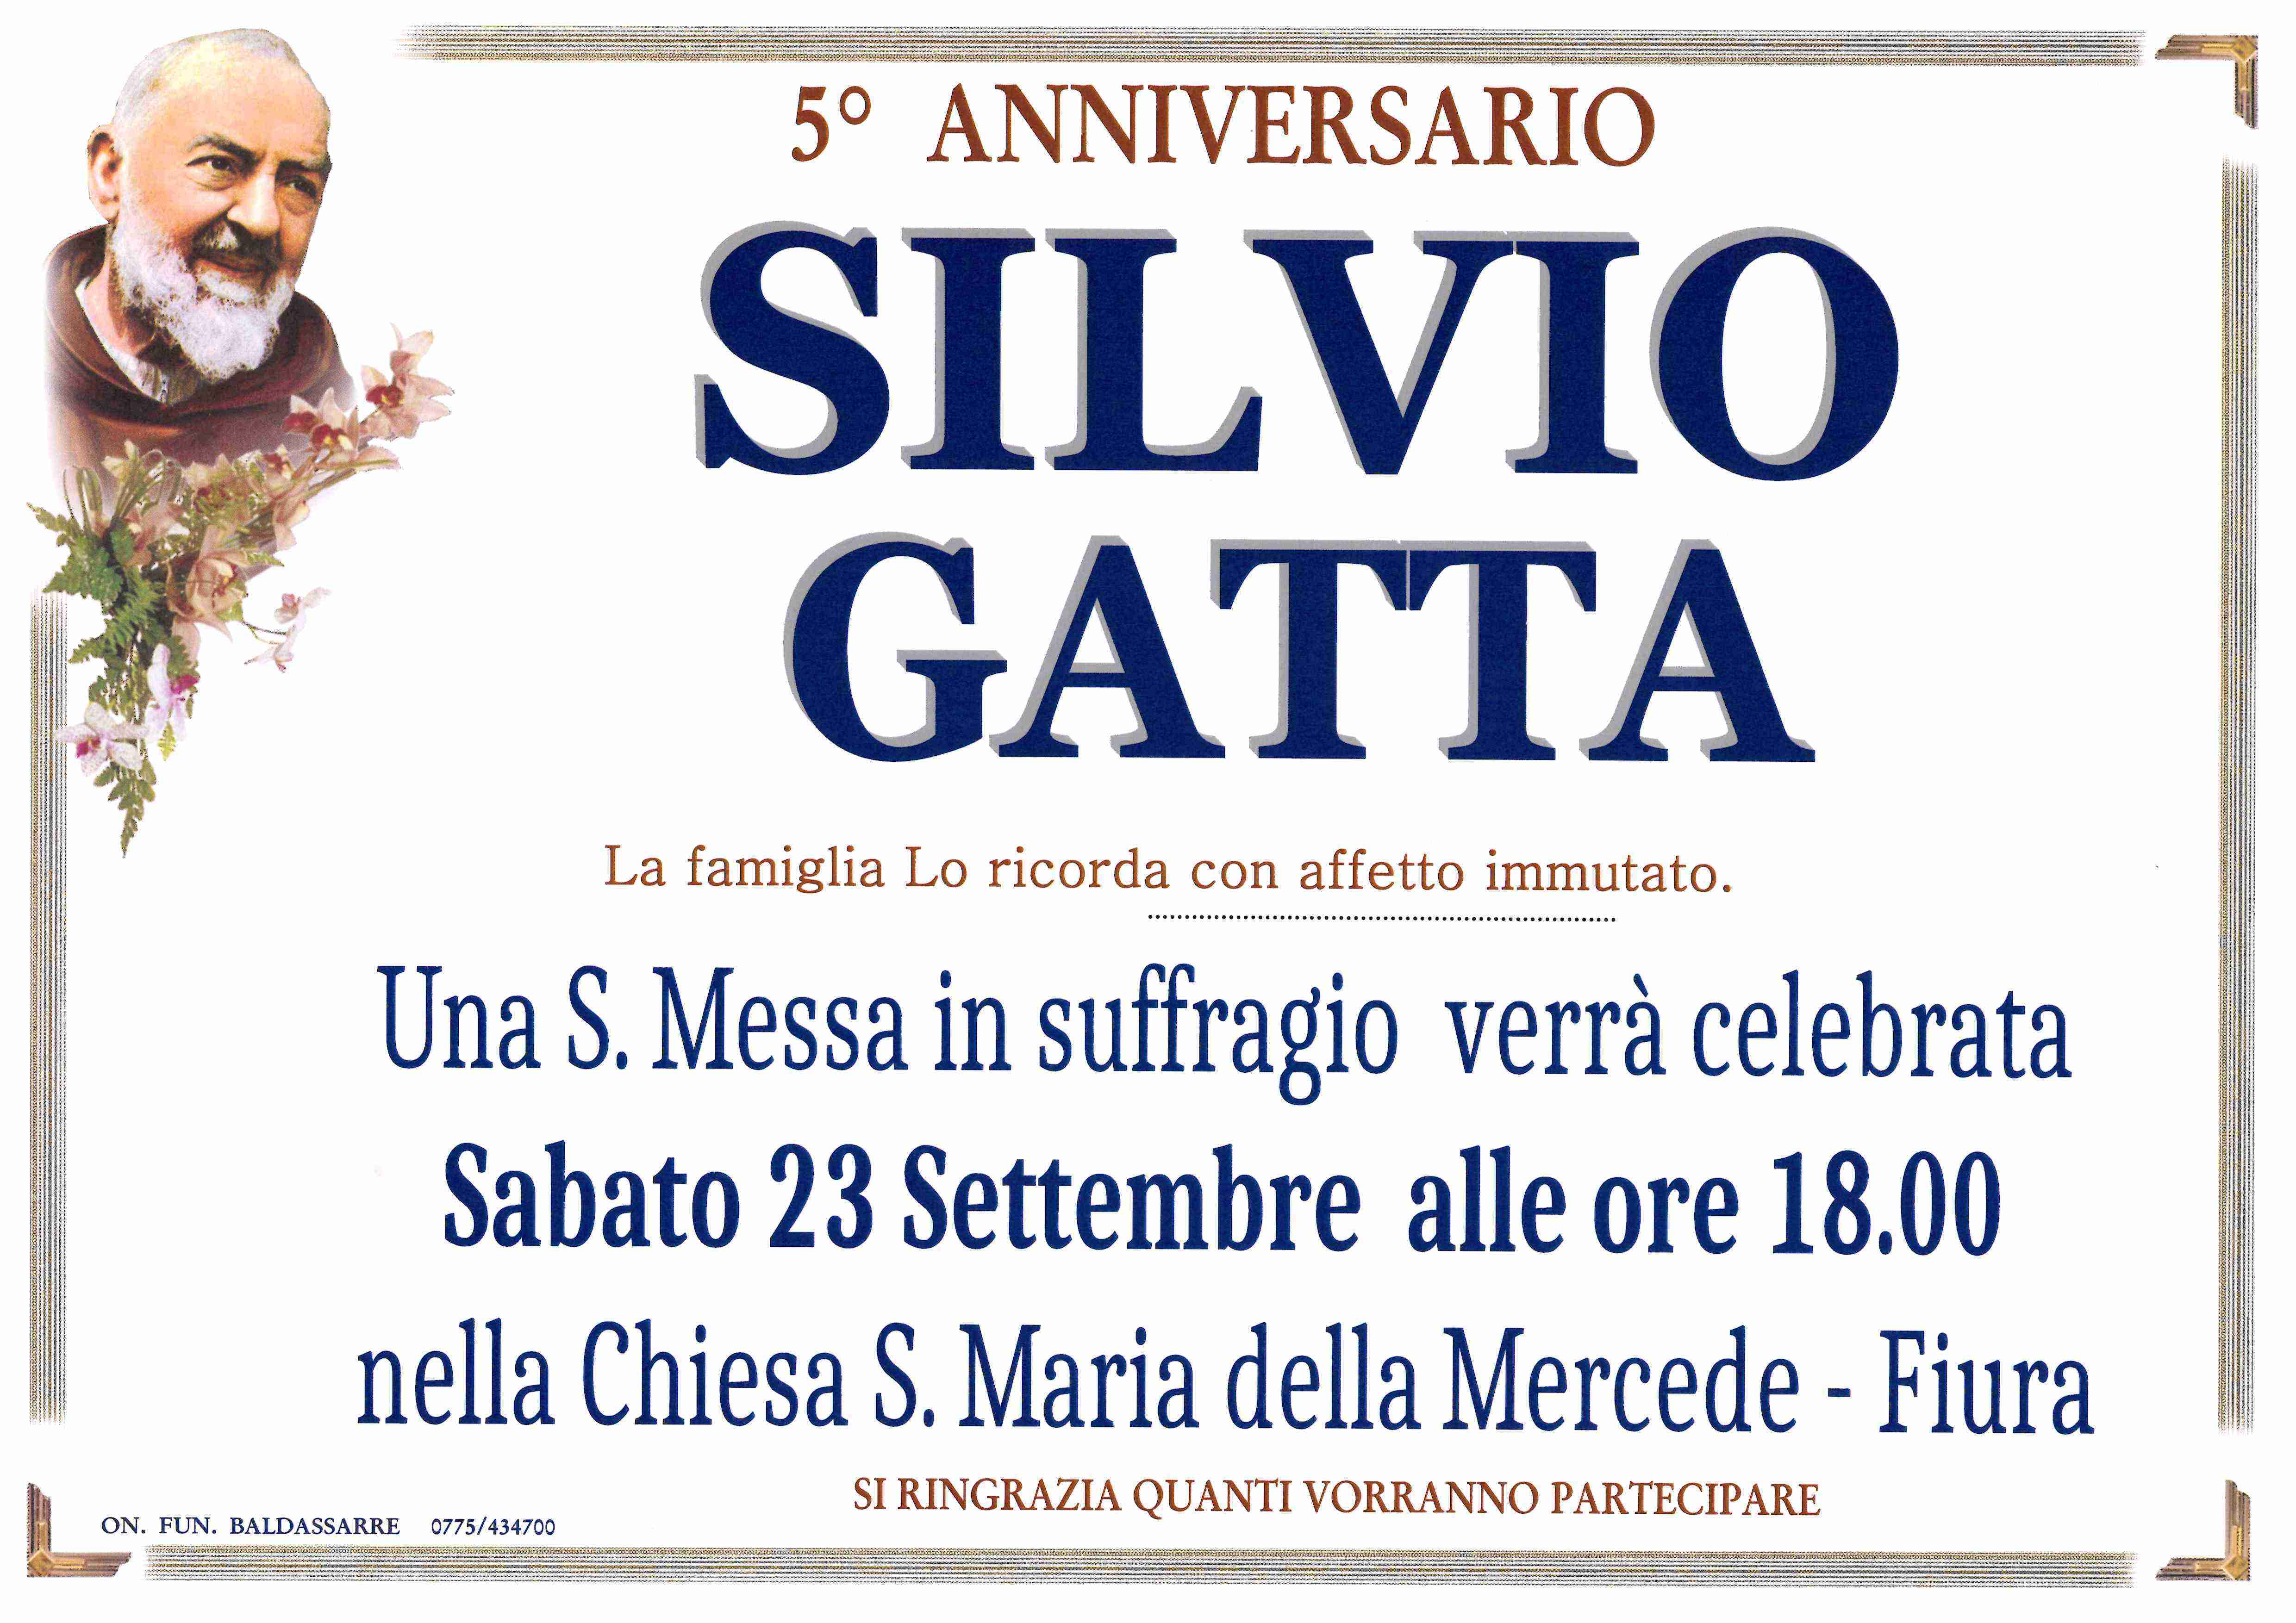 Silvio Gatta